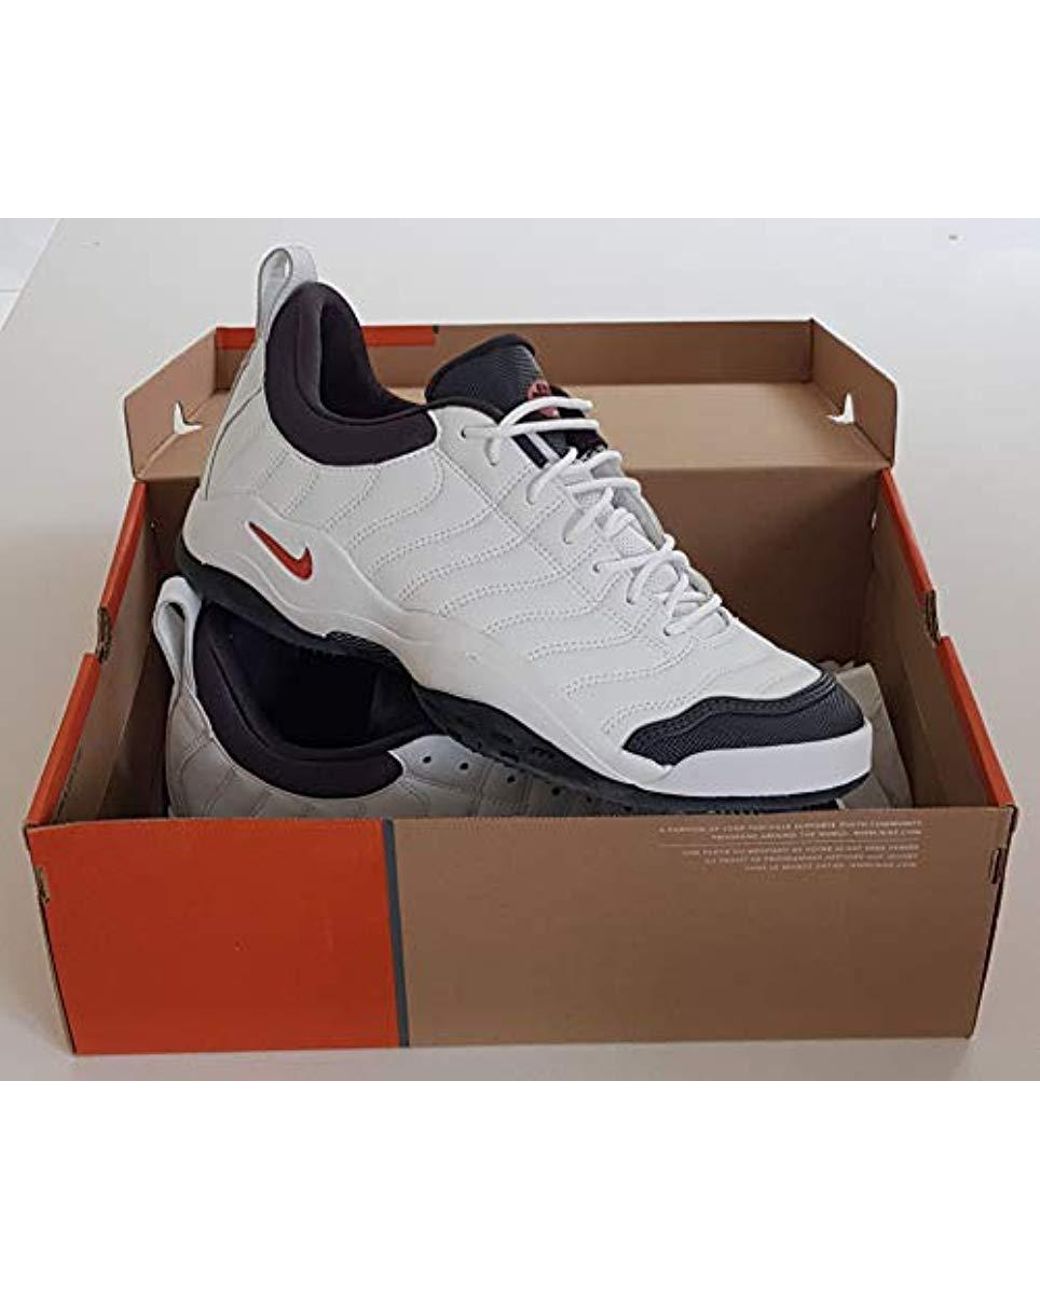 Nike Air Oscillate Tennis Shoes Original 2004 Uk 11, Eur 46 for Men | Lyst  UK